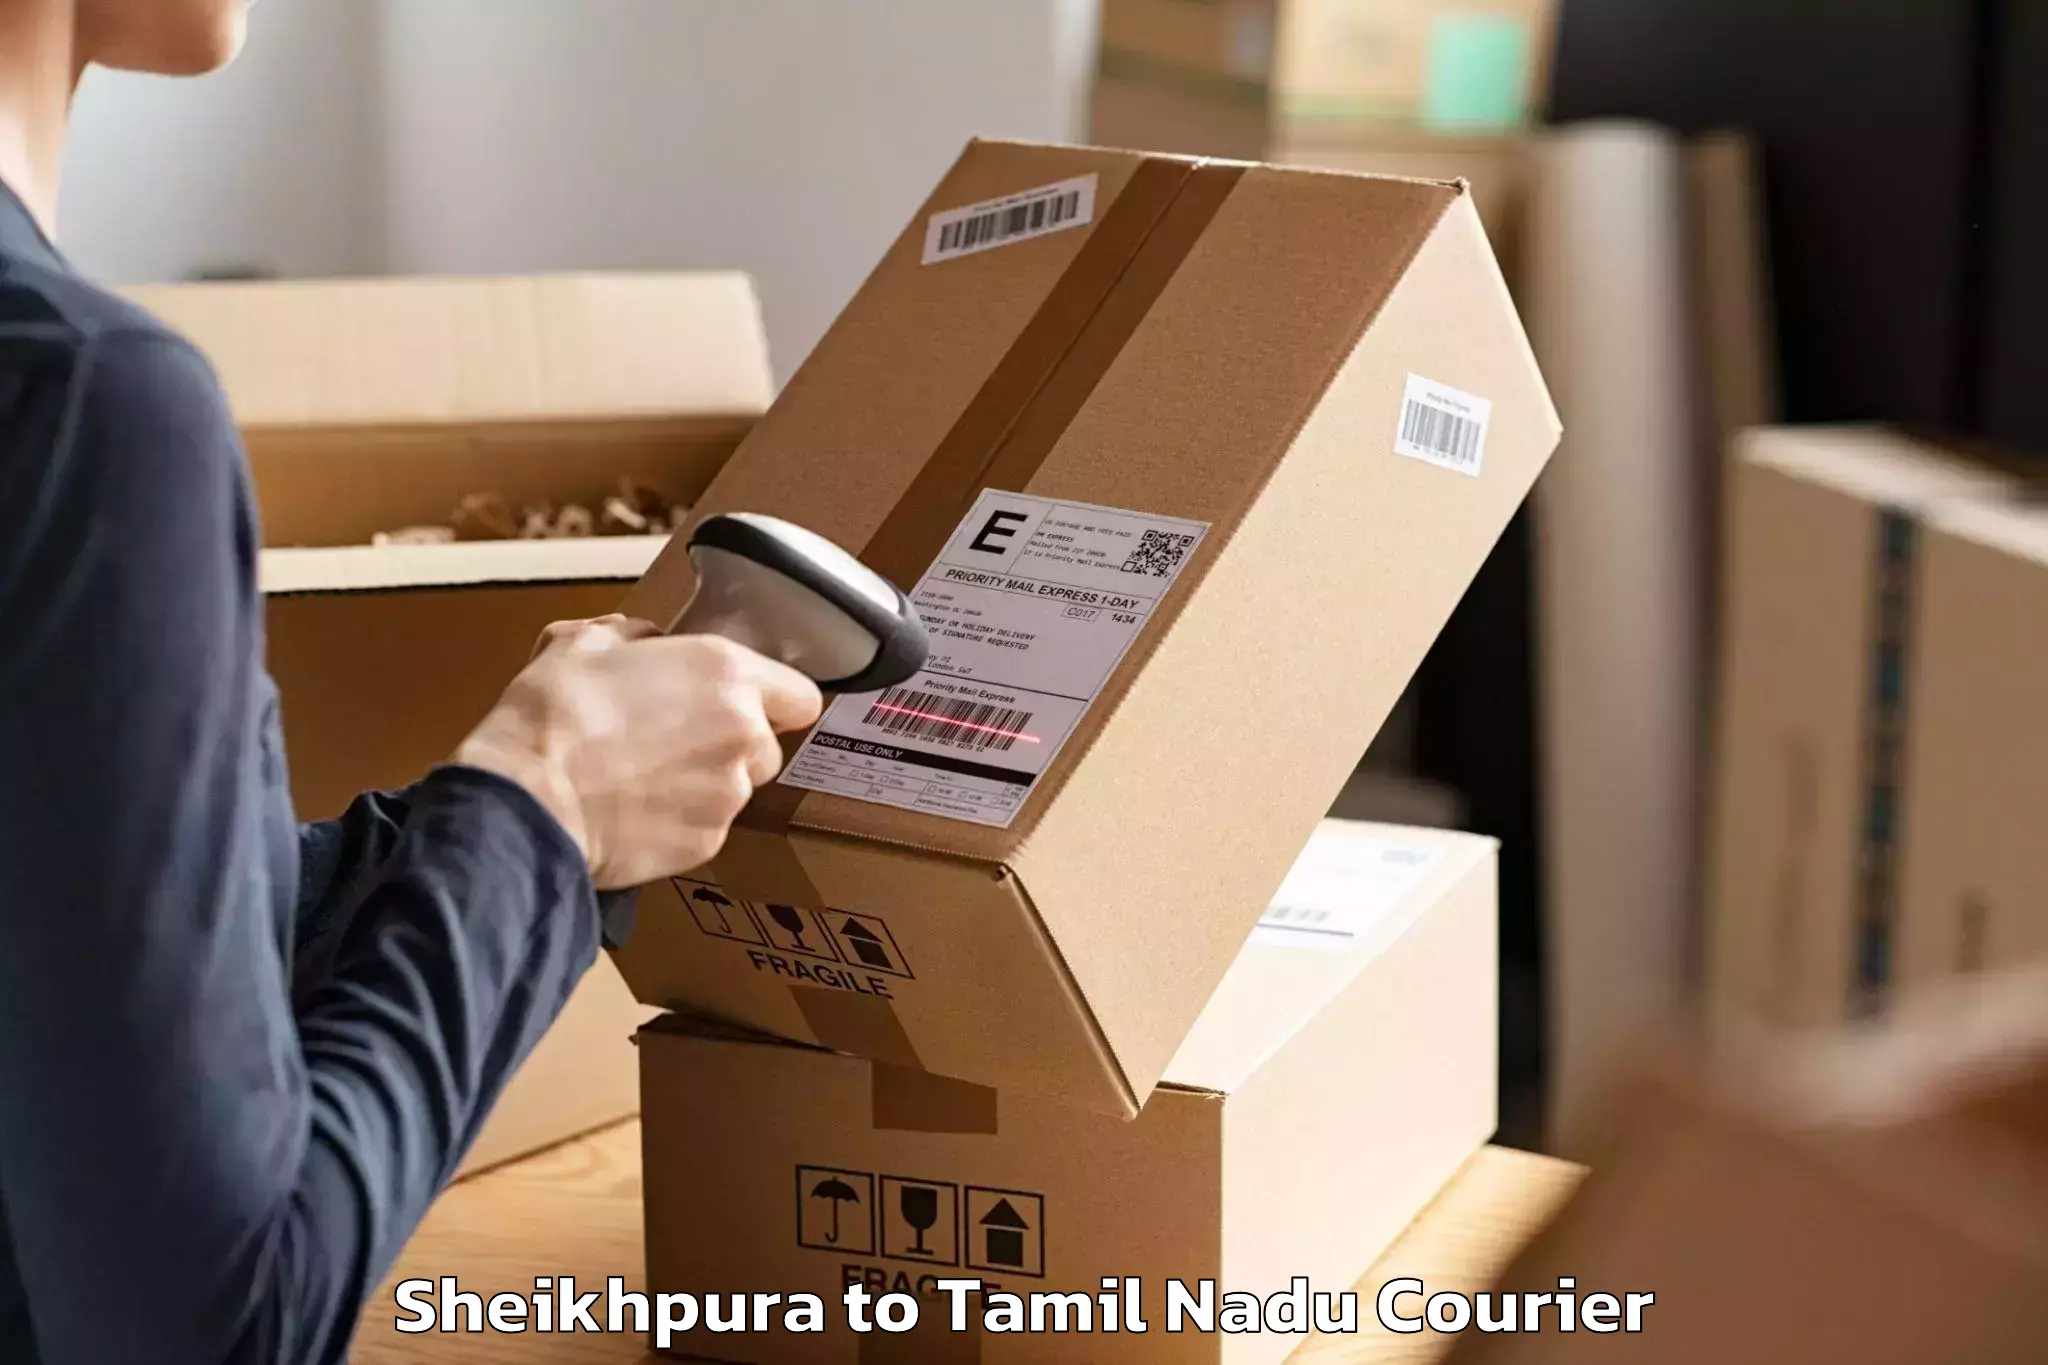 Furniture delivery service Sheikhpura to Chennai Port